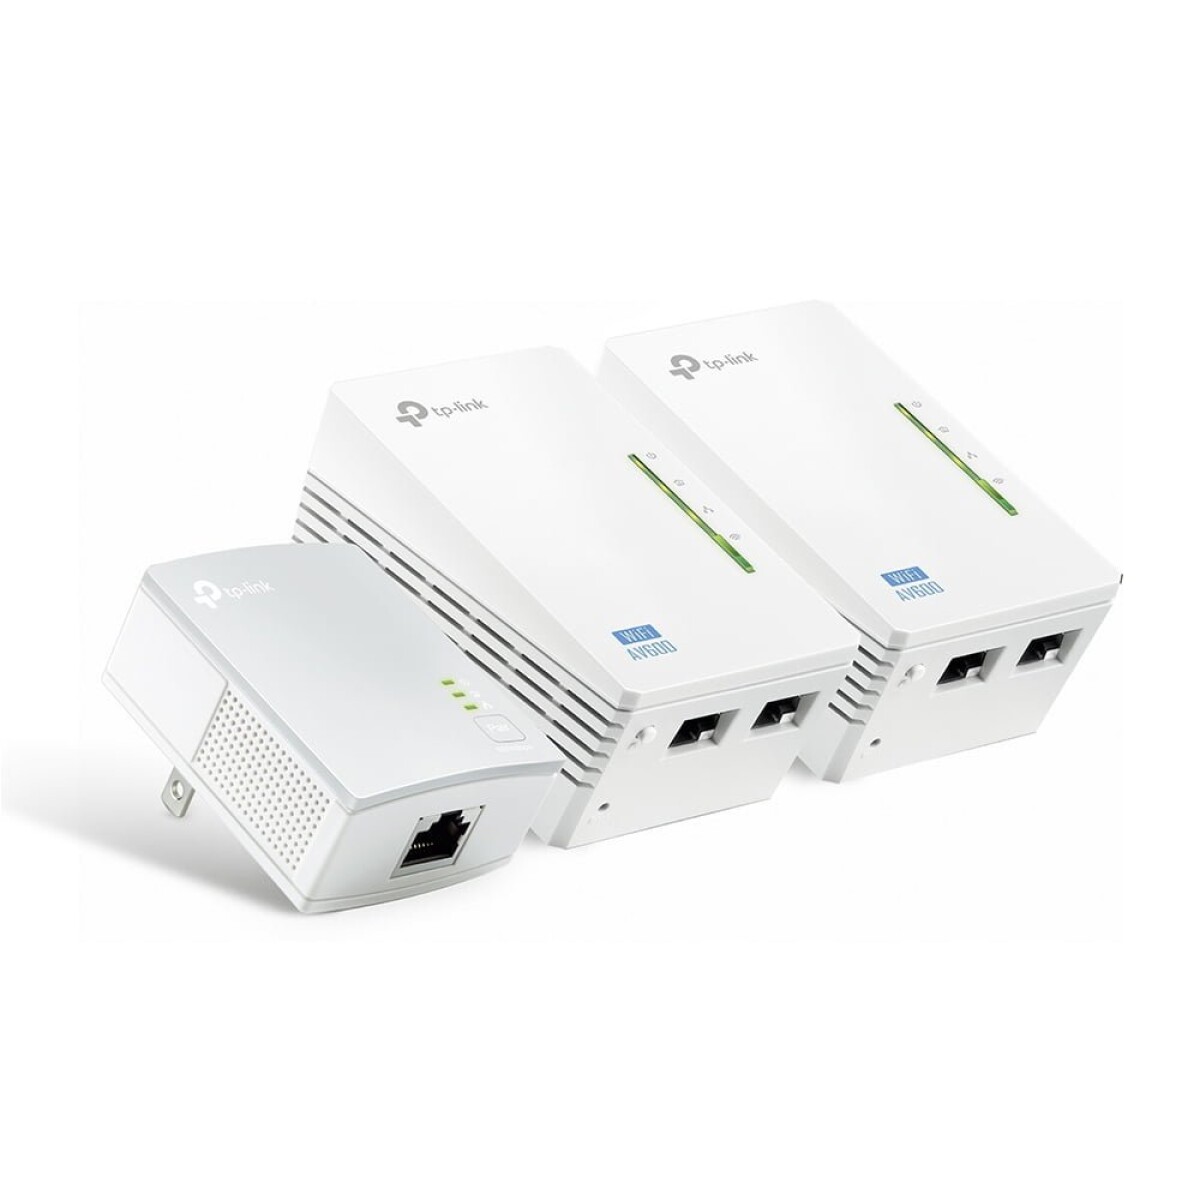 Powerline wifi extender tp-link tl-wpa4220 kit - Blanco 